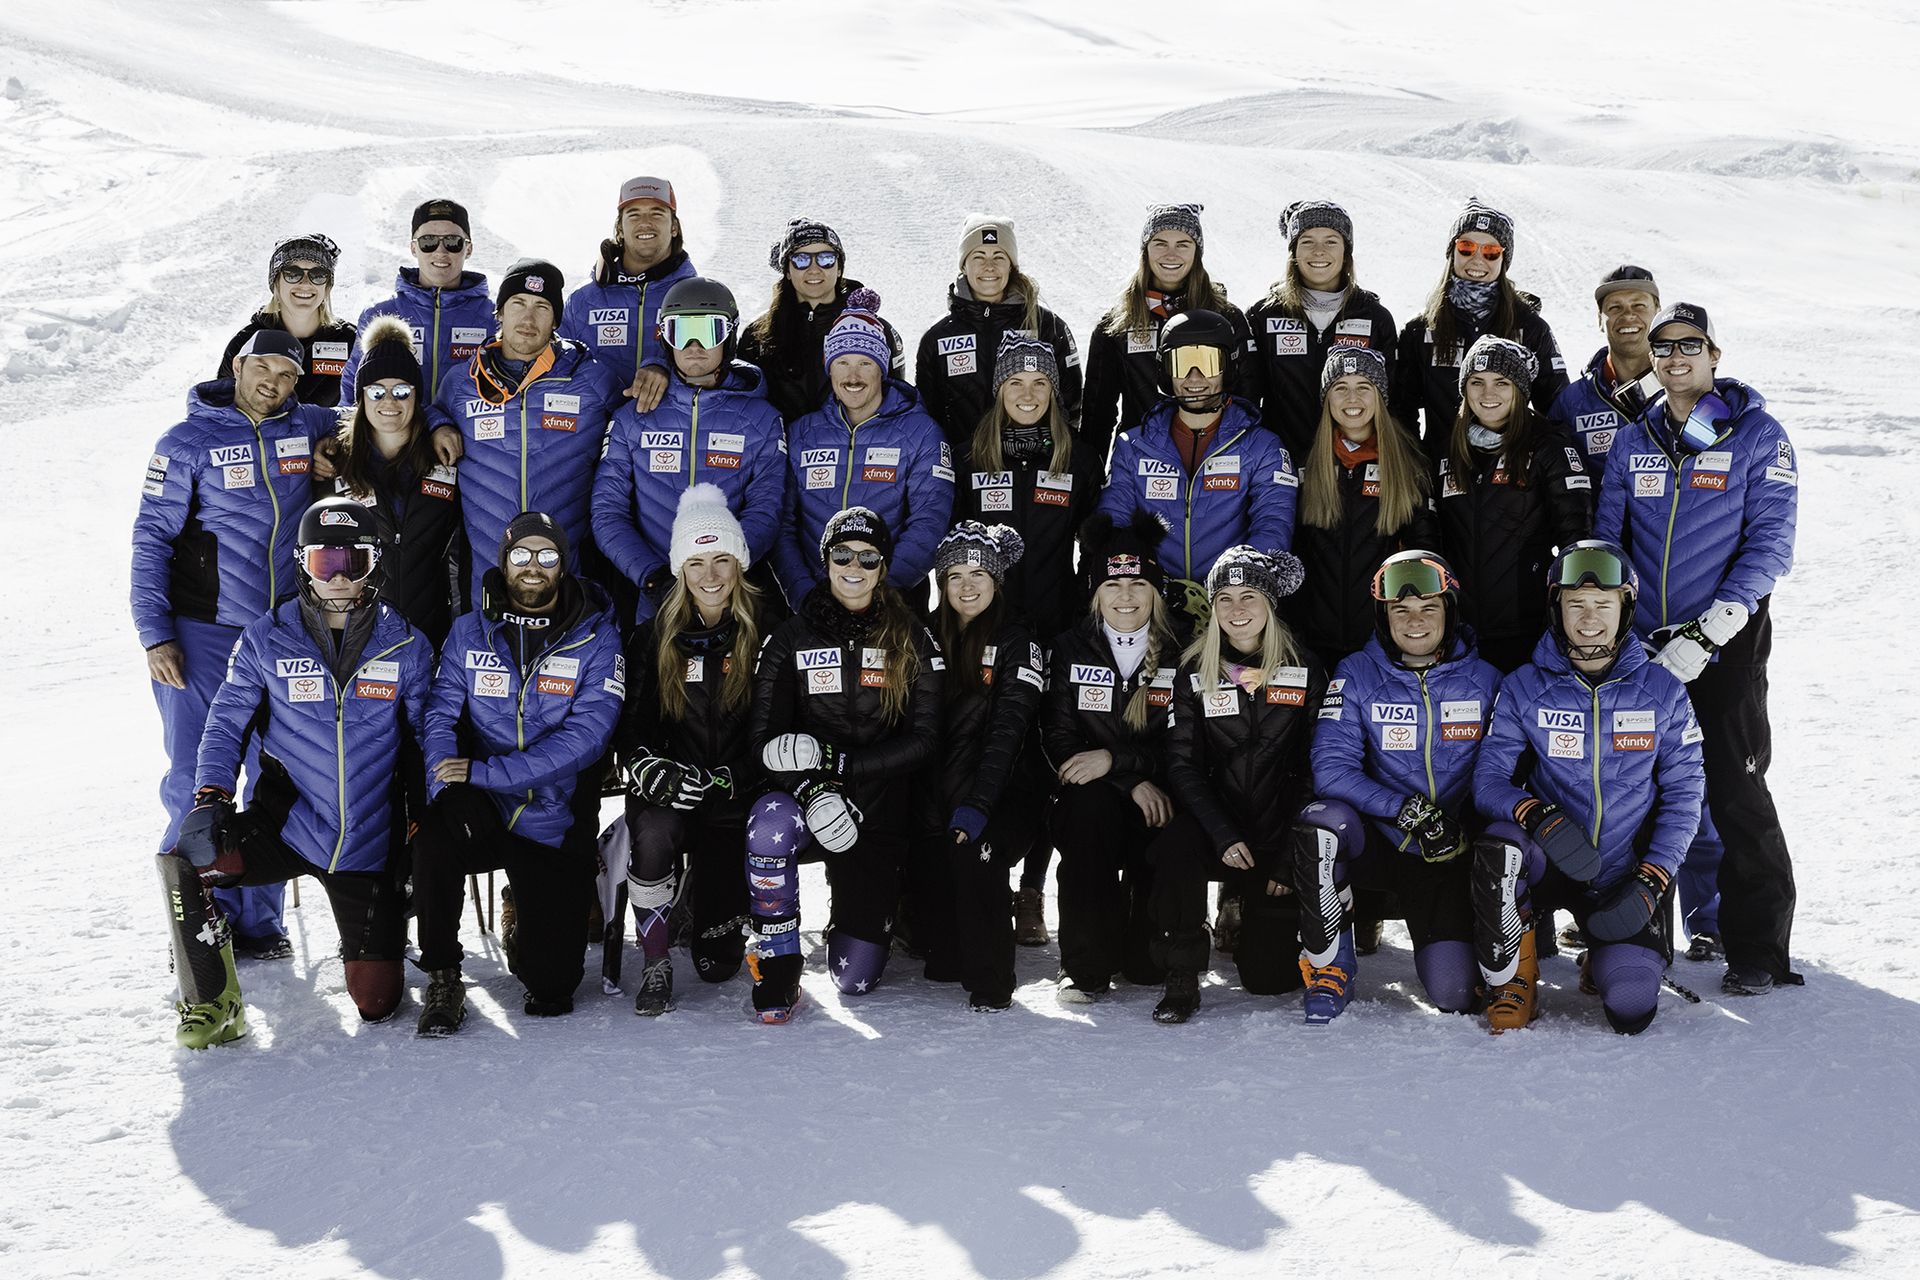 U.S. Ski team